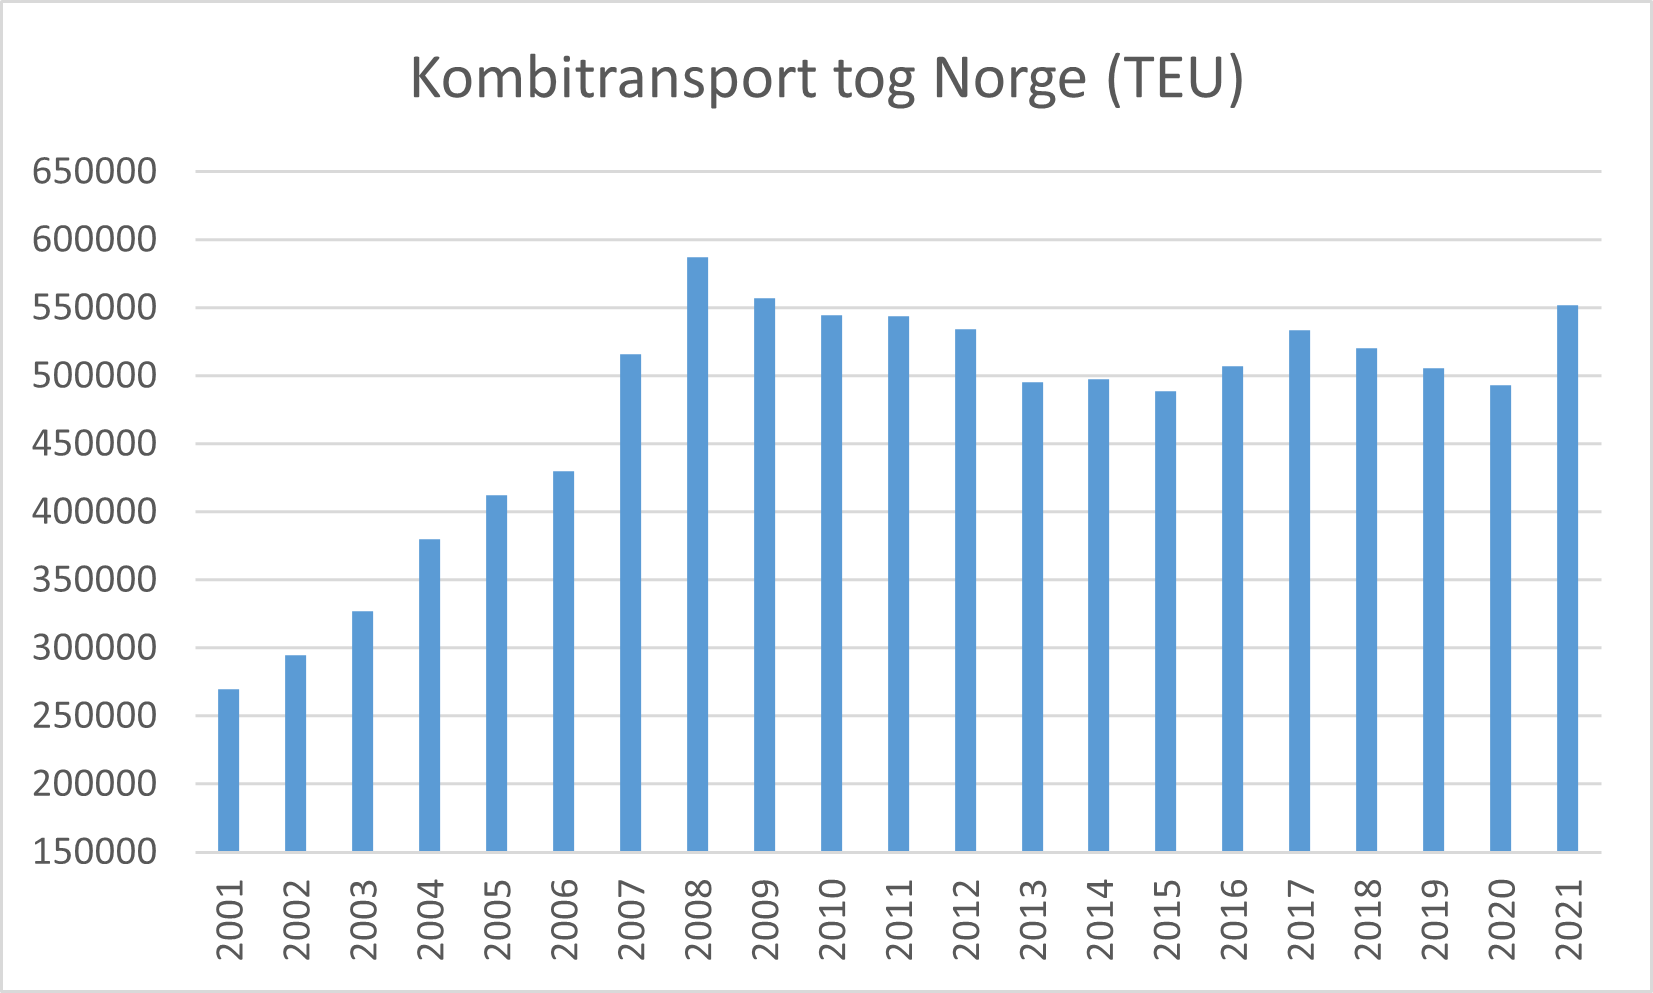 jernbane kombitransporter TEU 2001_2021.png